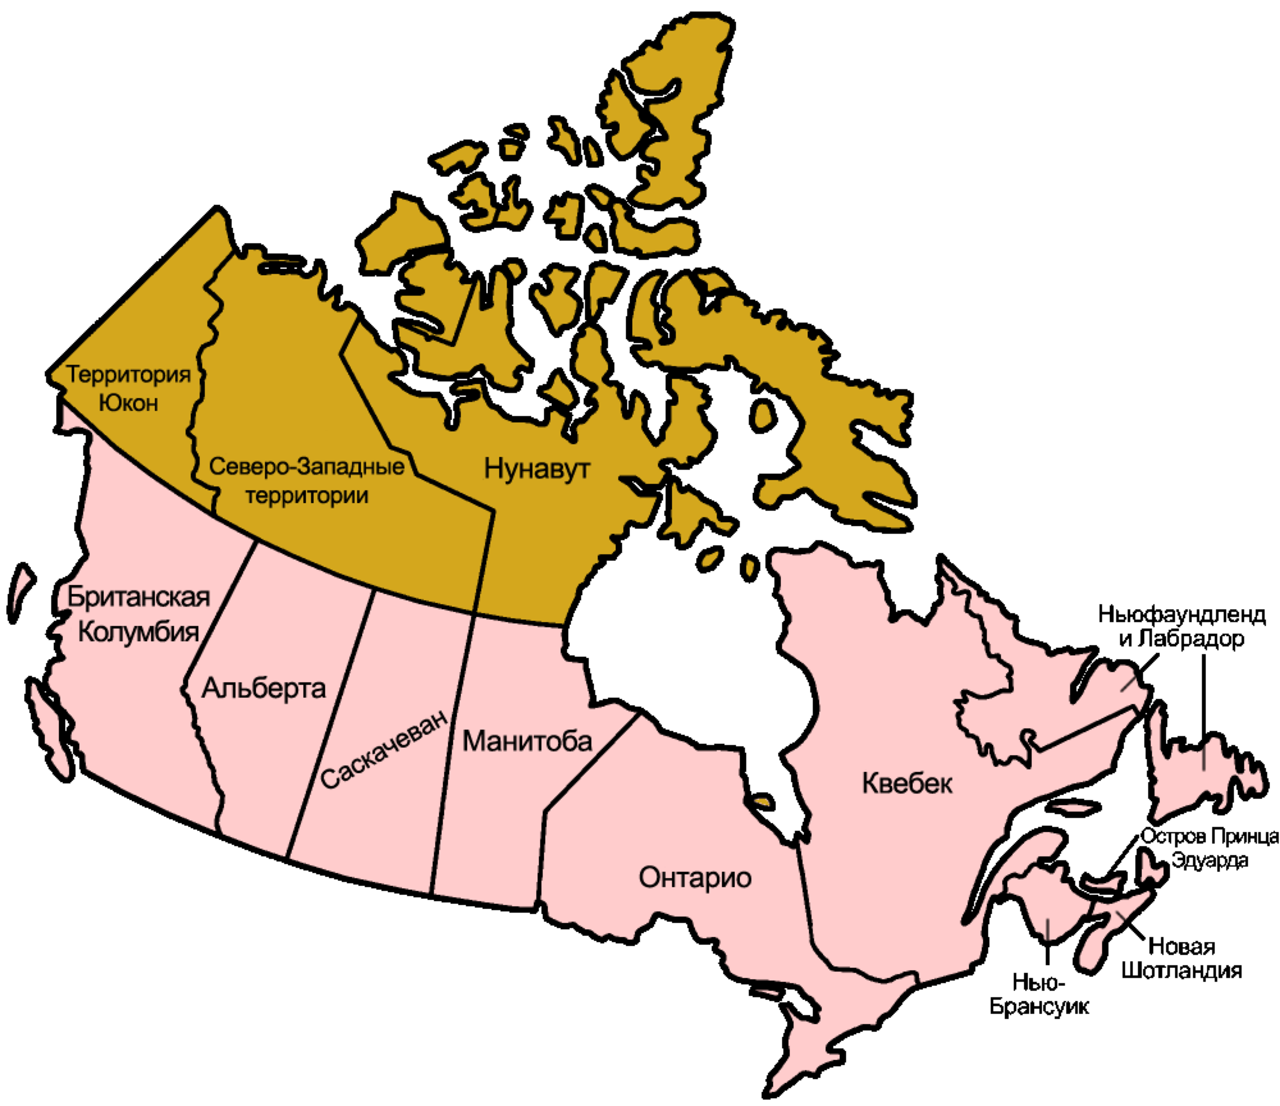 Part canada. Административно-территориальное деление Канады. Деление Канады на провинции. Административное деление Канады по провинциям и территориям. Административно территориальные единицы Канады.